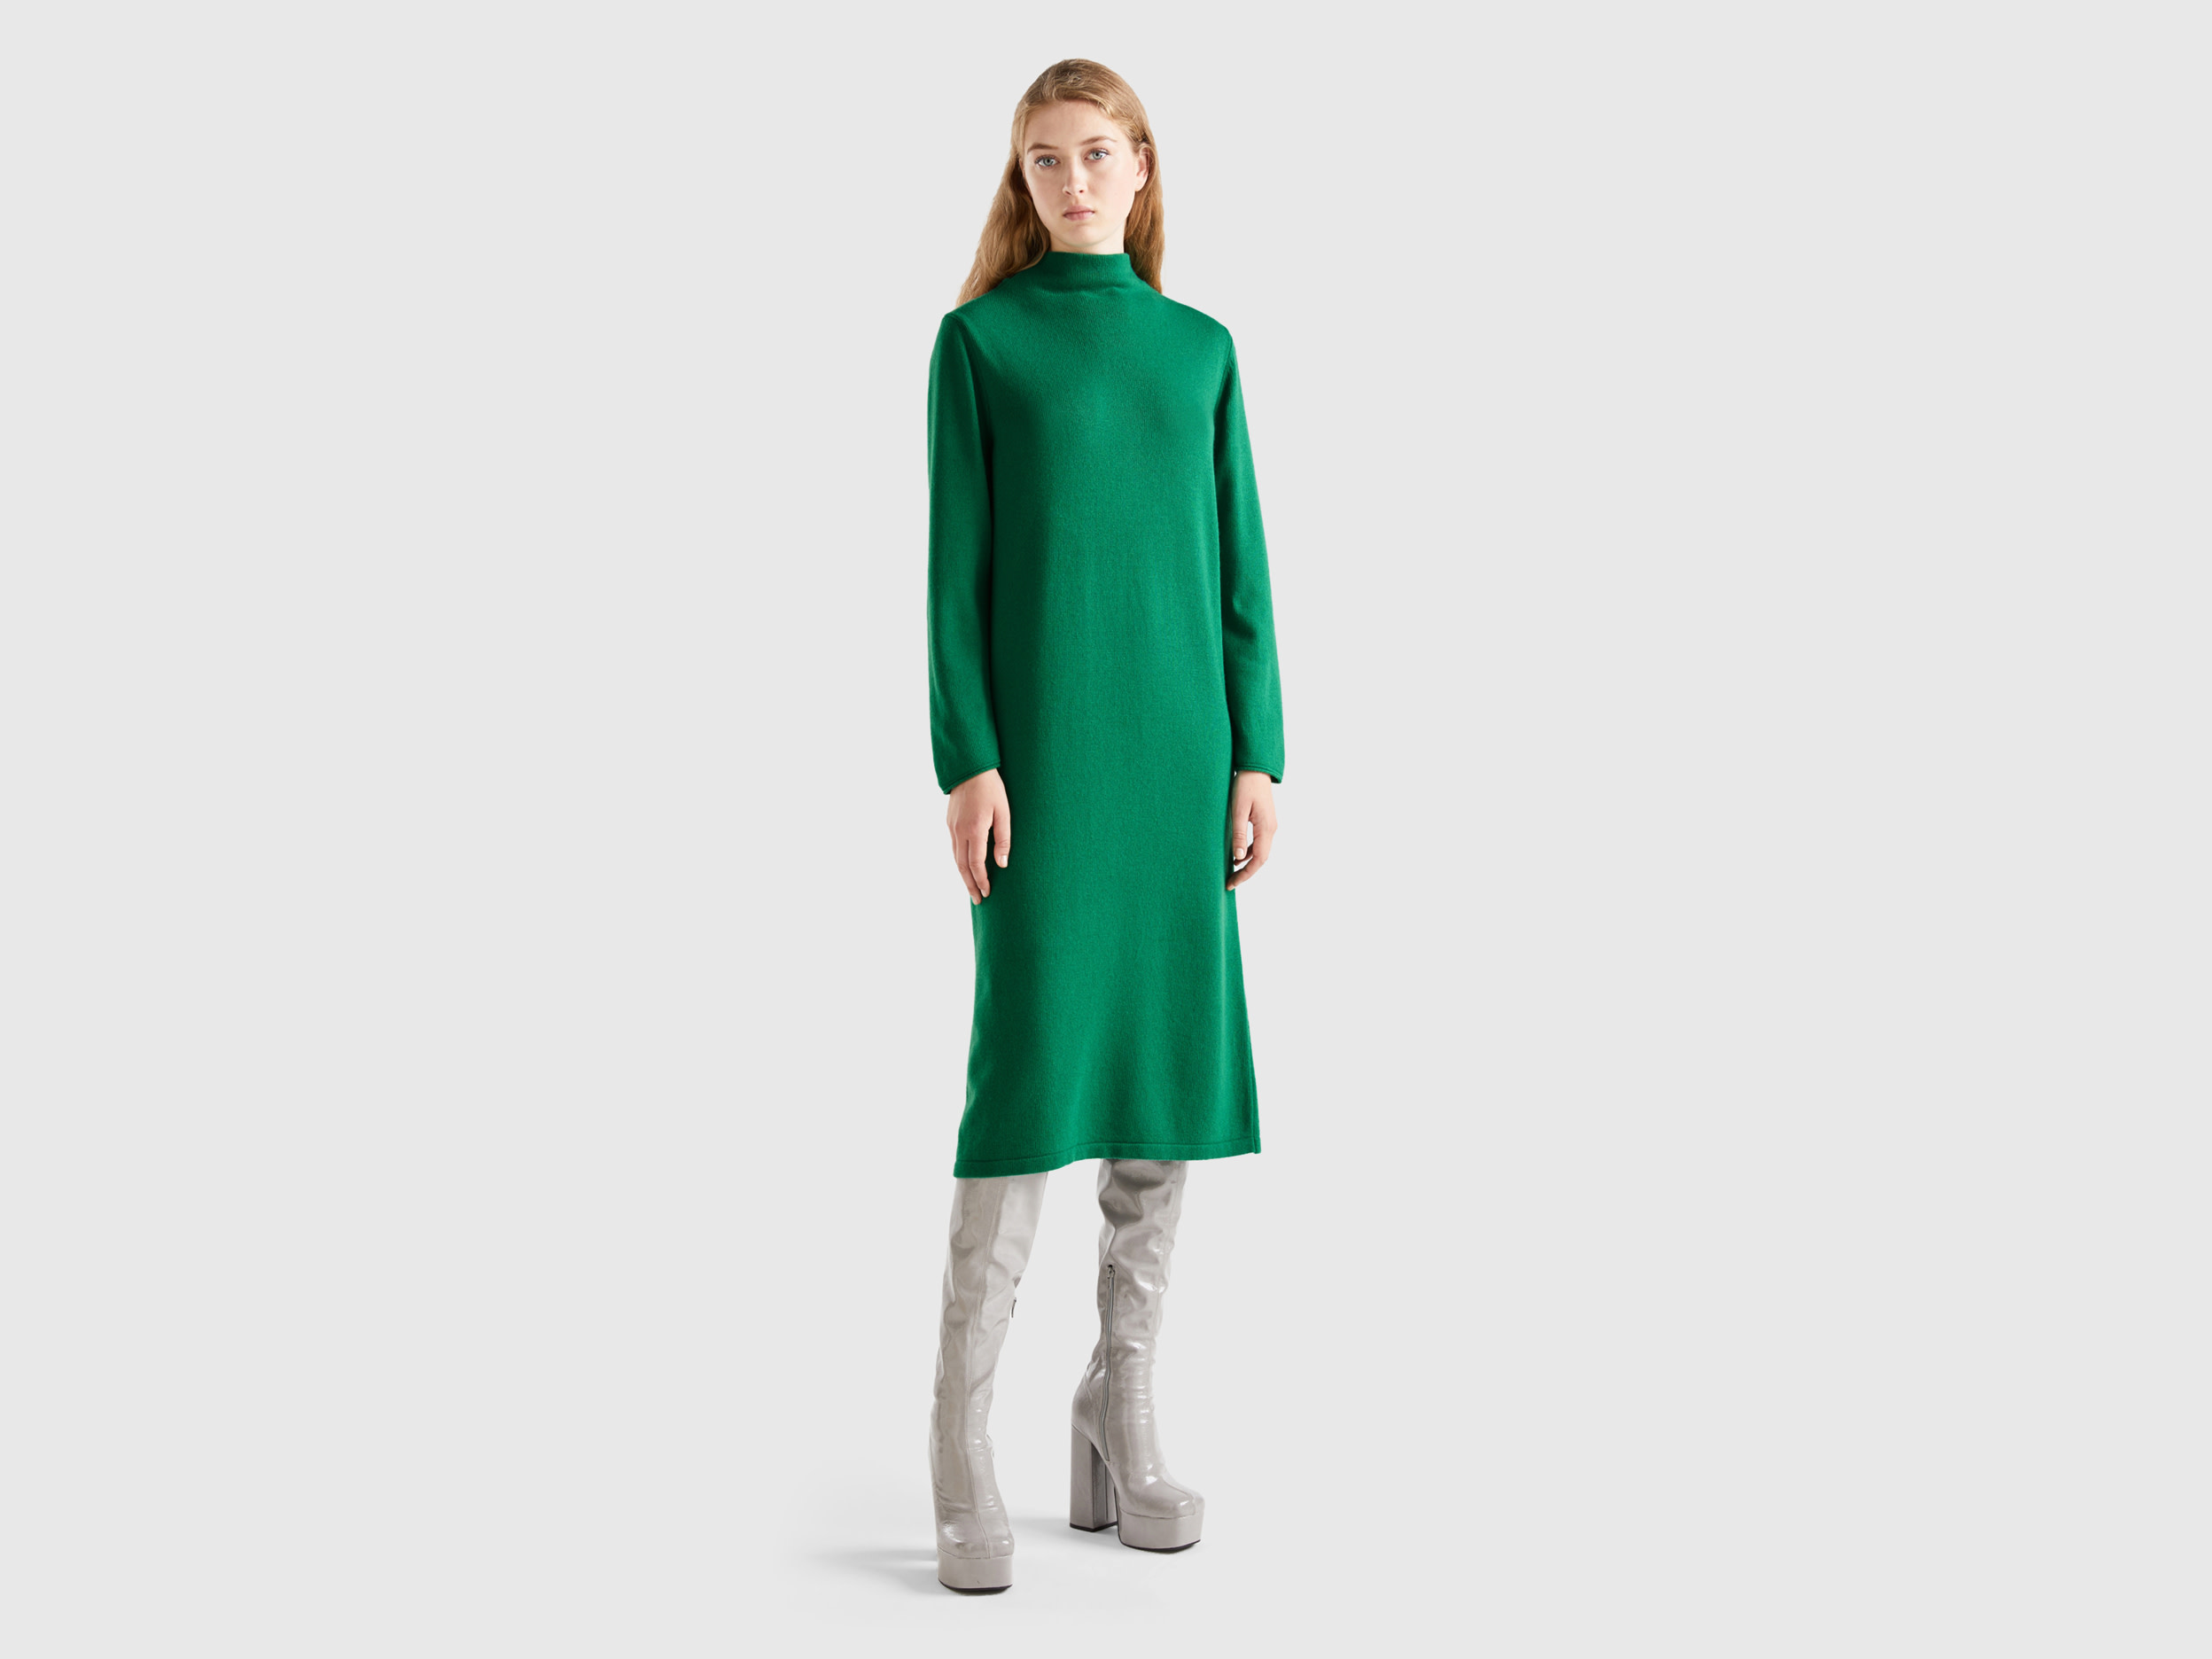 Benetton, Cashmere Blend Midi Dress, size L-XL, Green, Women